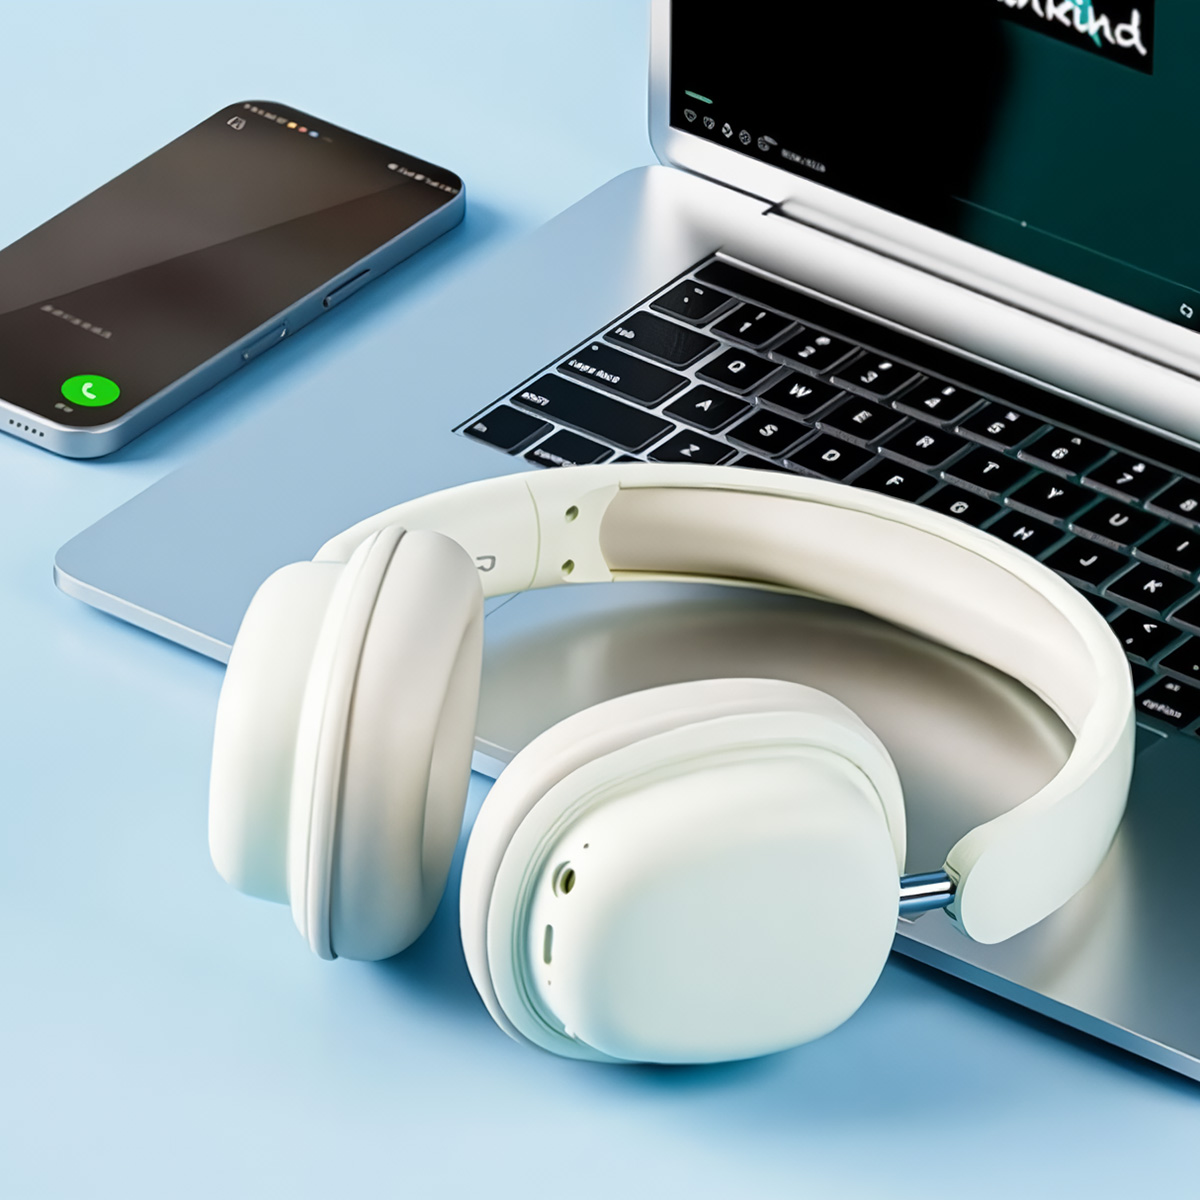 Auscultadores Bluetooth Klack Inalámbricos Sy-t1 Dobrável Com Microfone Amovível E Bateria Com Autonomia De 20h - Bege